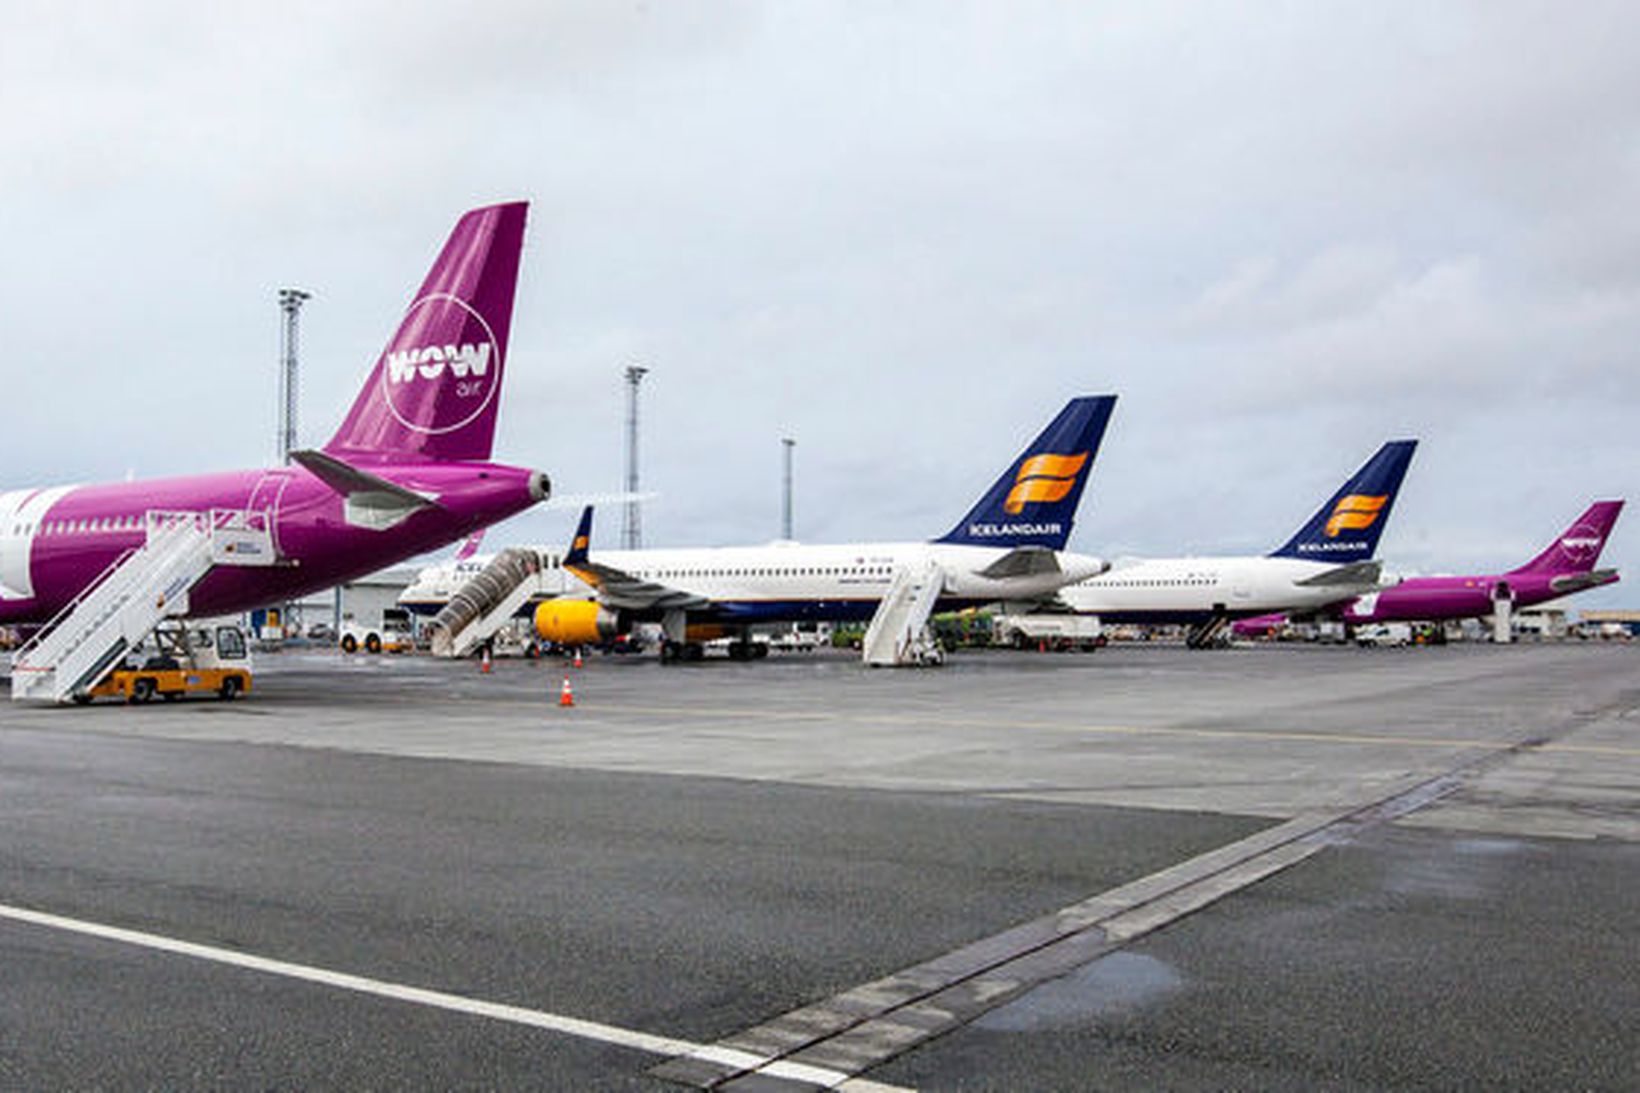 Farþegaþotur flugfélaganna WOW air og Icelandair á Keflavíkurflugvelli. WOW air …